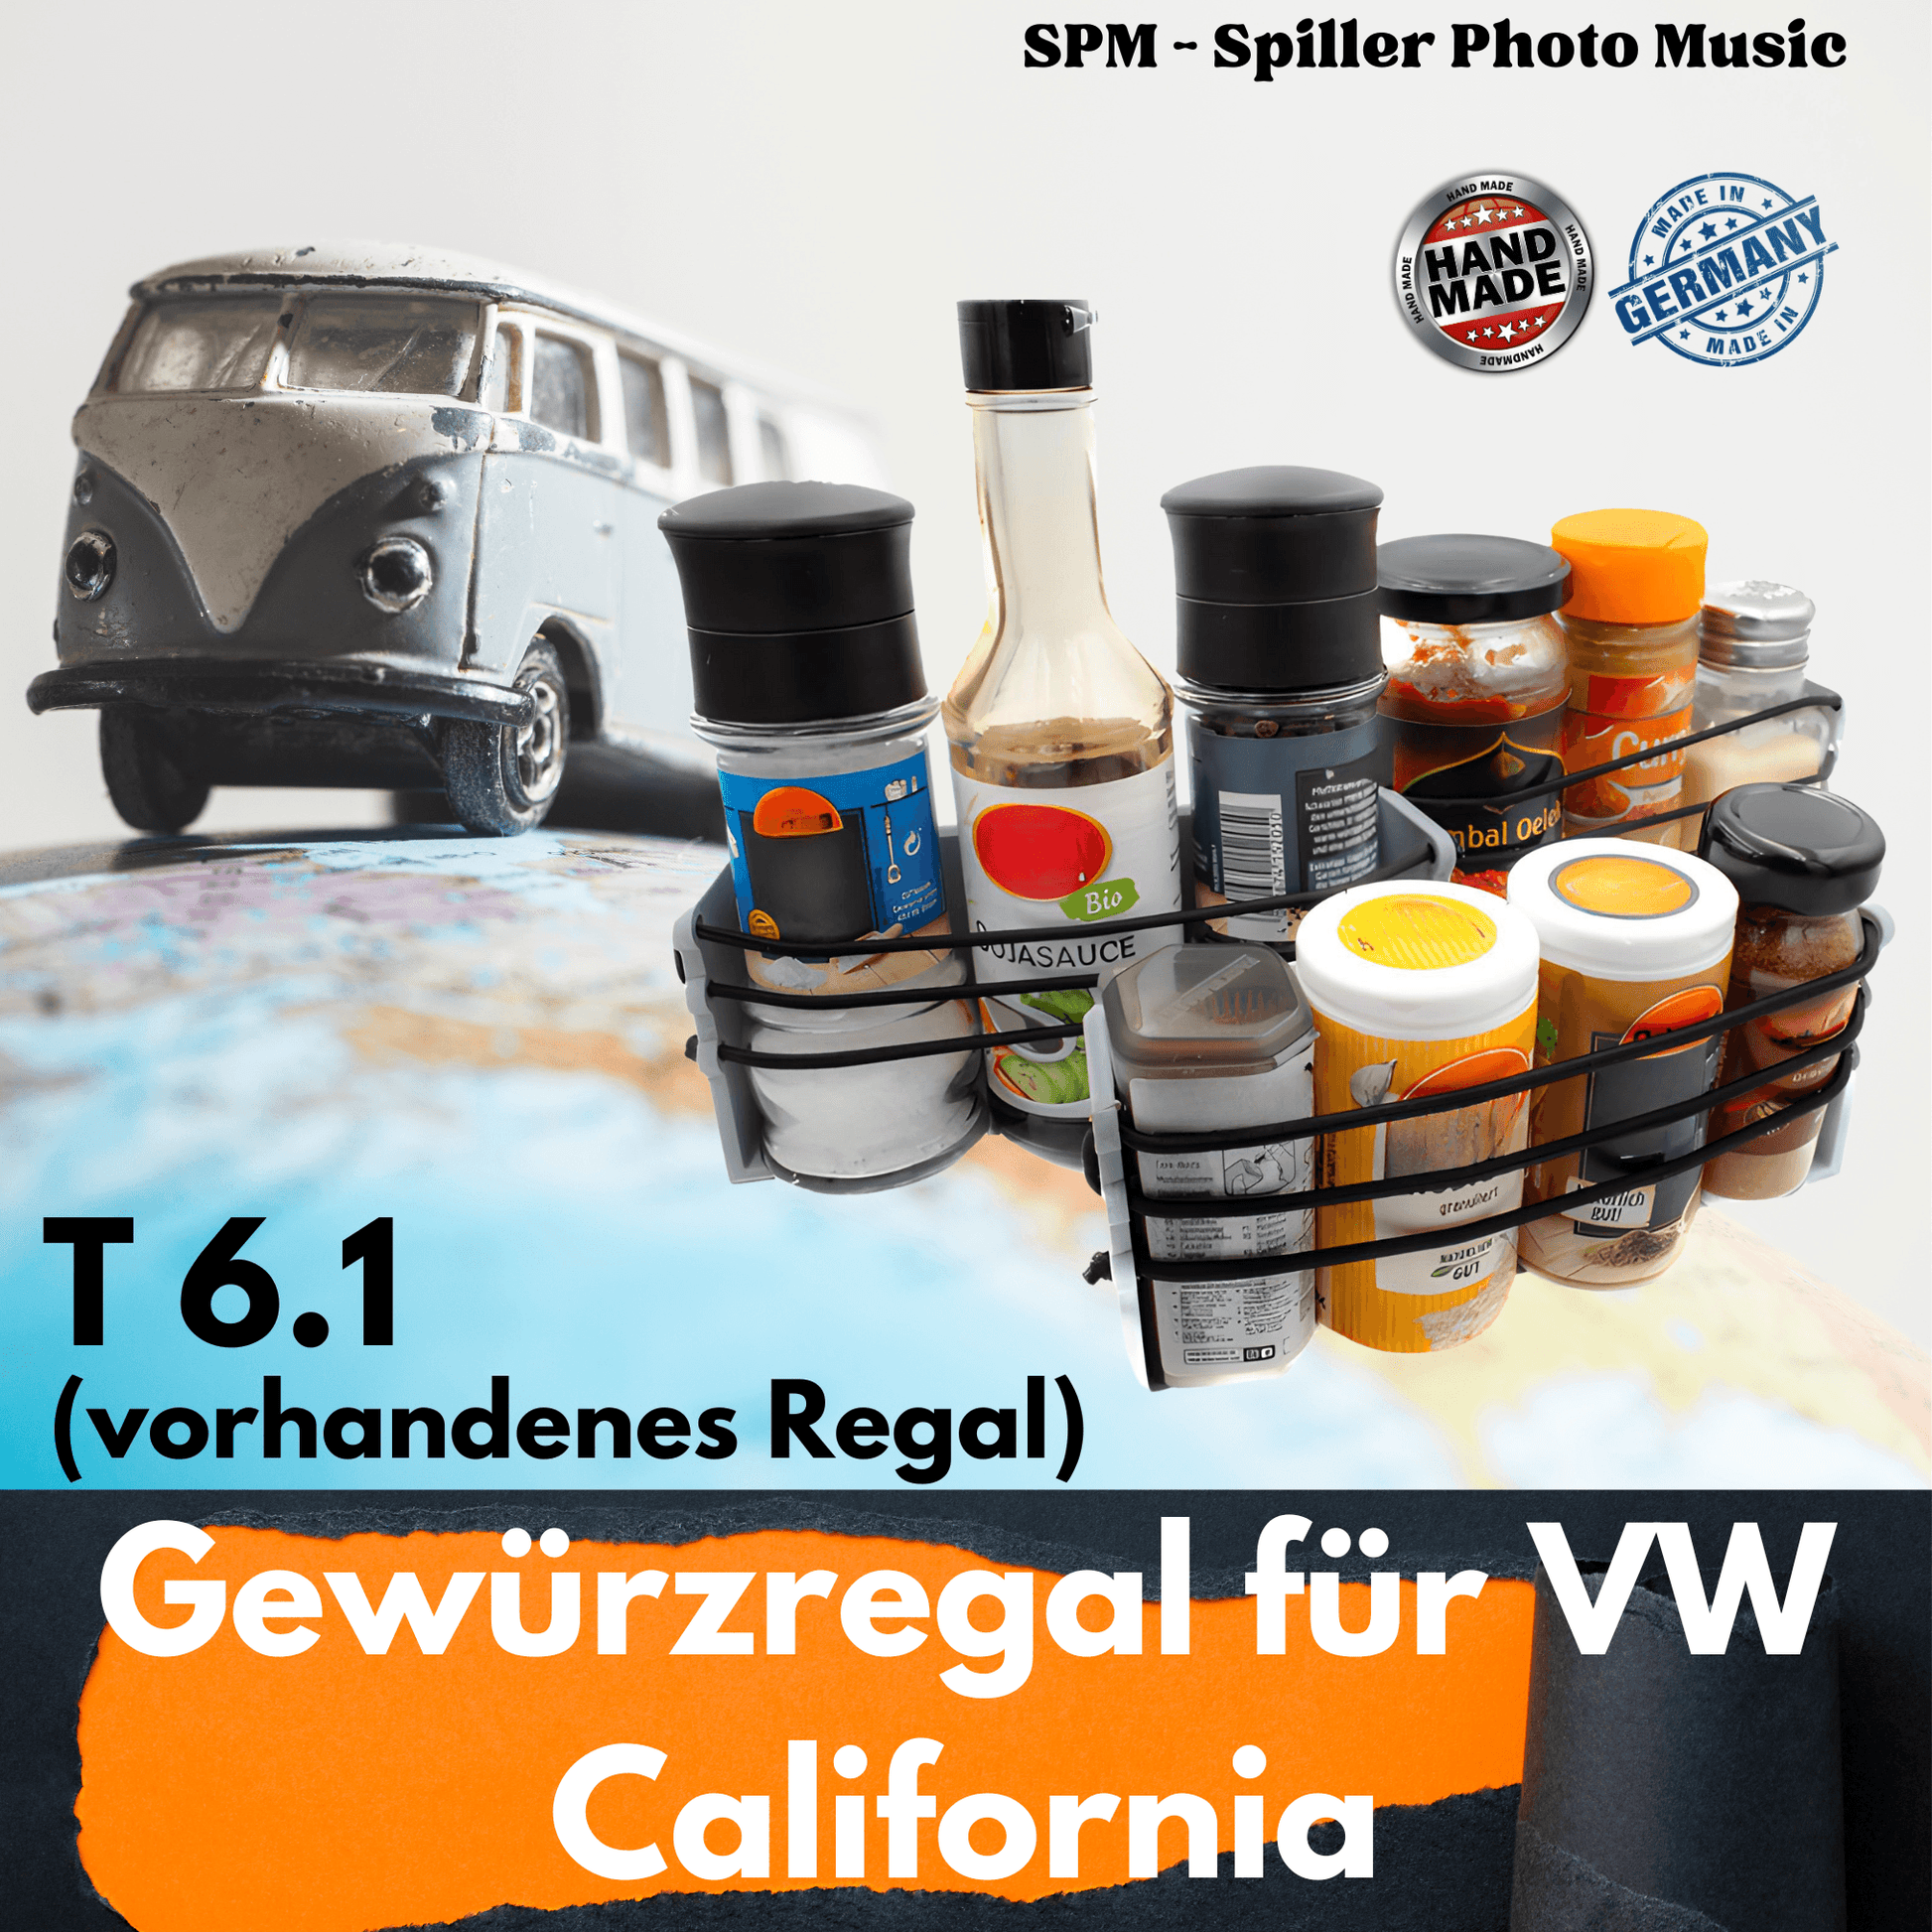 VW California T6.1 Gewürzregal für zum aufkleben auf das vorhandenes Regal in der Verdunklung vom kleinen Fenster - SPM - Spillerphoto & Music